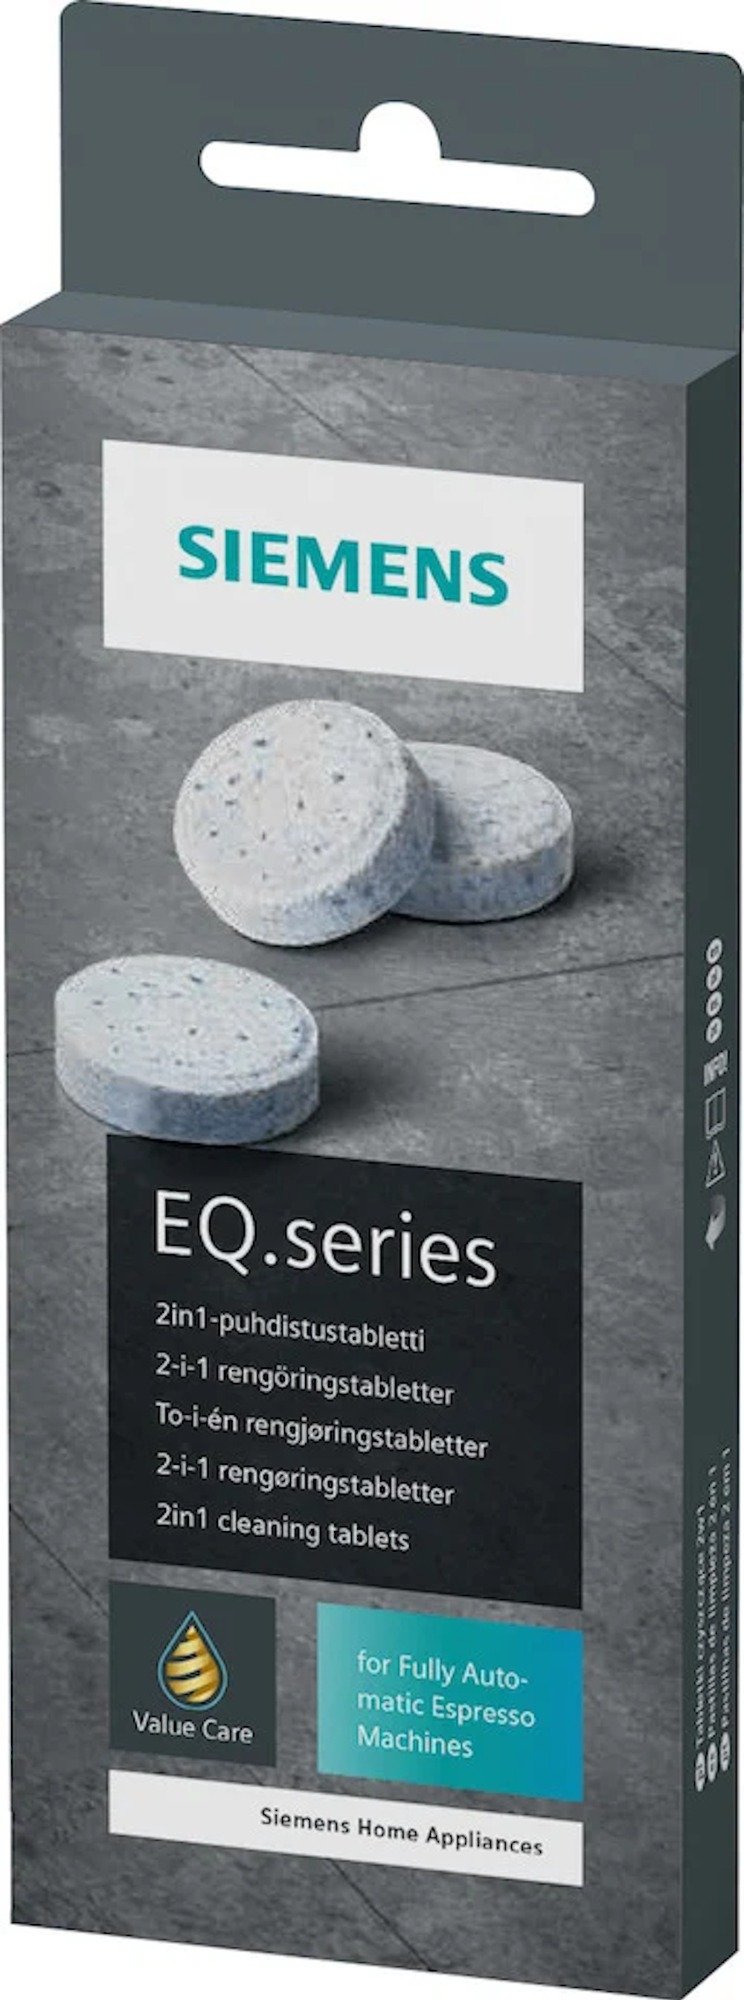 Siemens EQ.series tablettes de nettoyage pour machine à café, 10 pcs - Crema